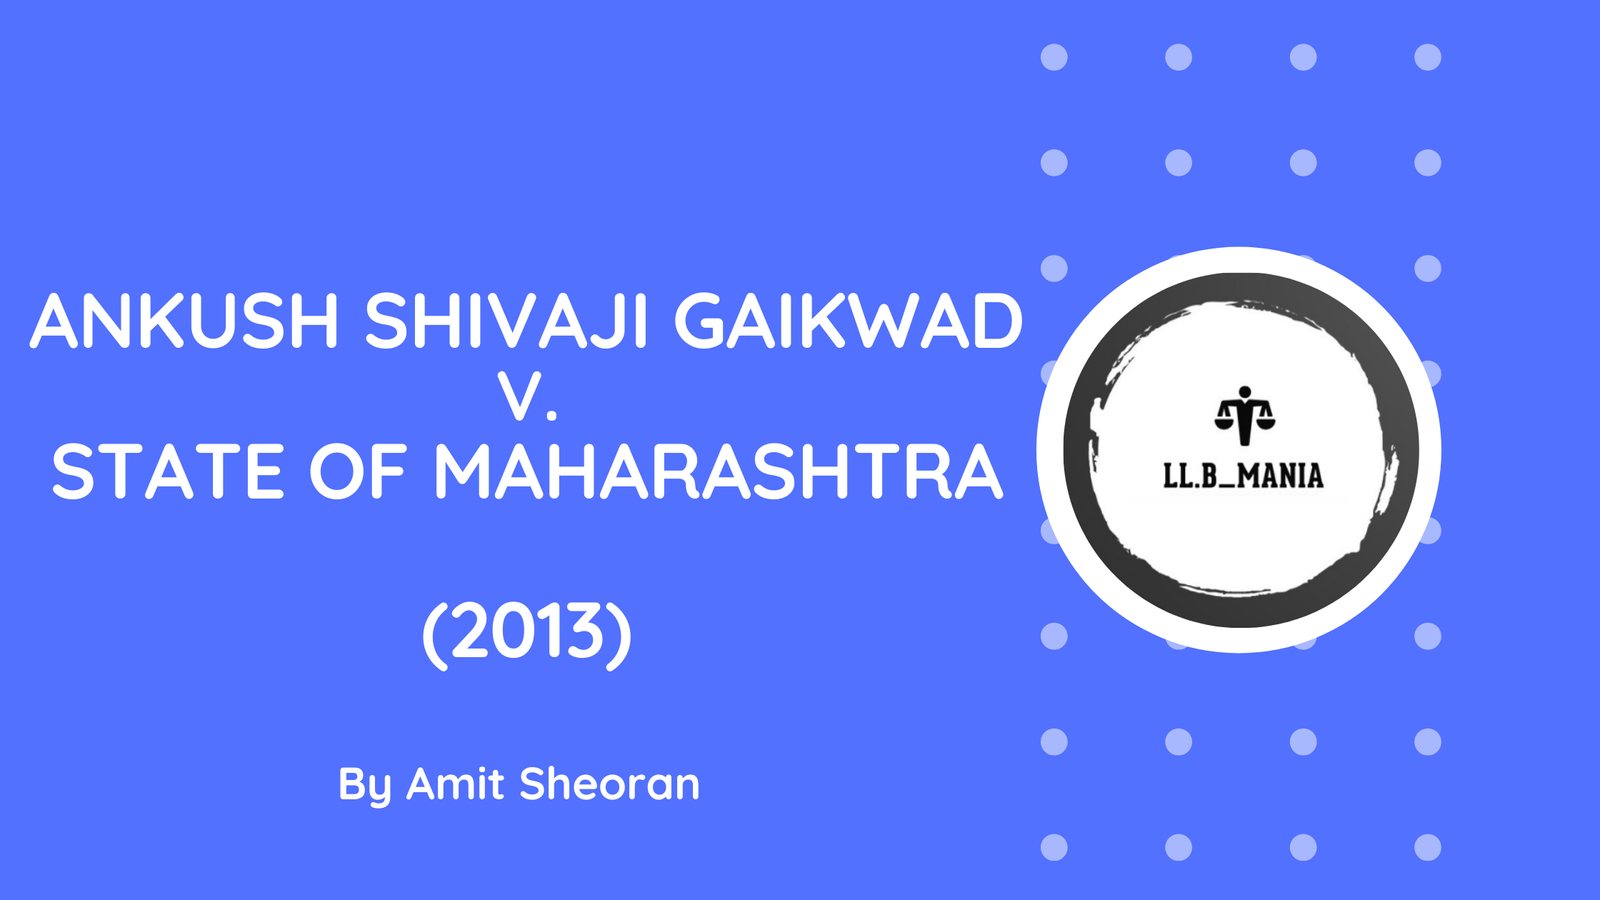 Ankush Shivaji Gaikwad v. State of Maharashtra (2013)